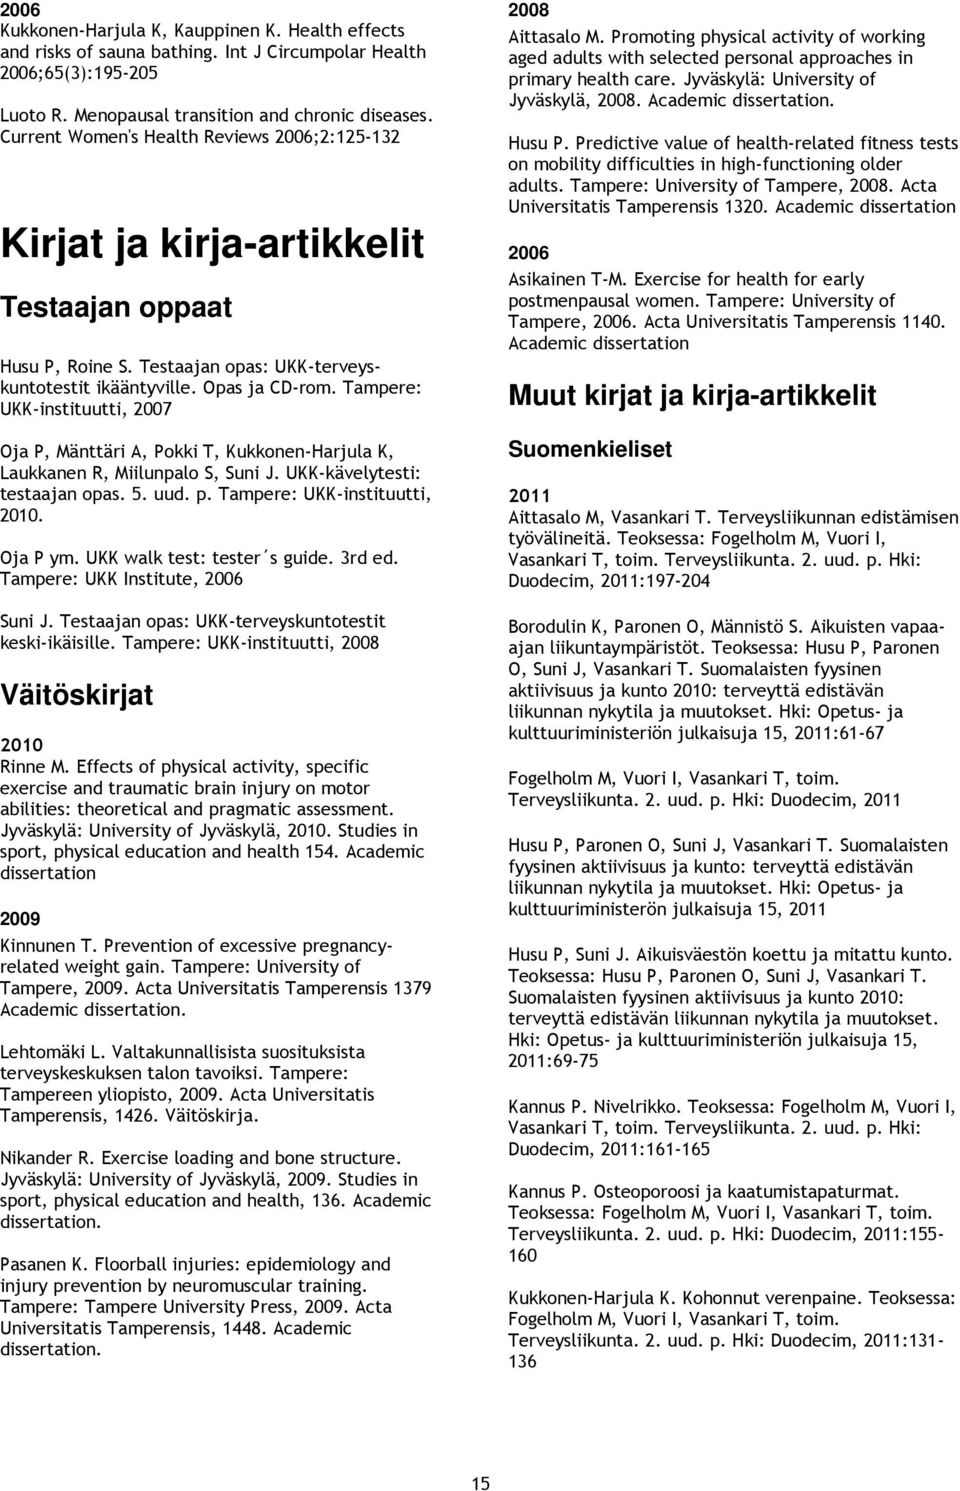 Tampere: UKK-instituutti, Oja P, Mänttäri A, Pokki T, Kukkonen-Harjula K, Laukkanen R, Miilunpalo S, Suni J. UKK-kävelytesti: testaajan opas. 5. uud. p. Tampere: UKK-instituutti,. Oja P ym.